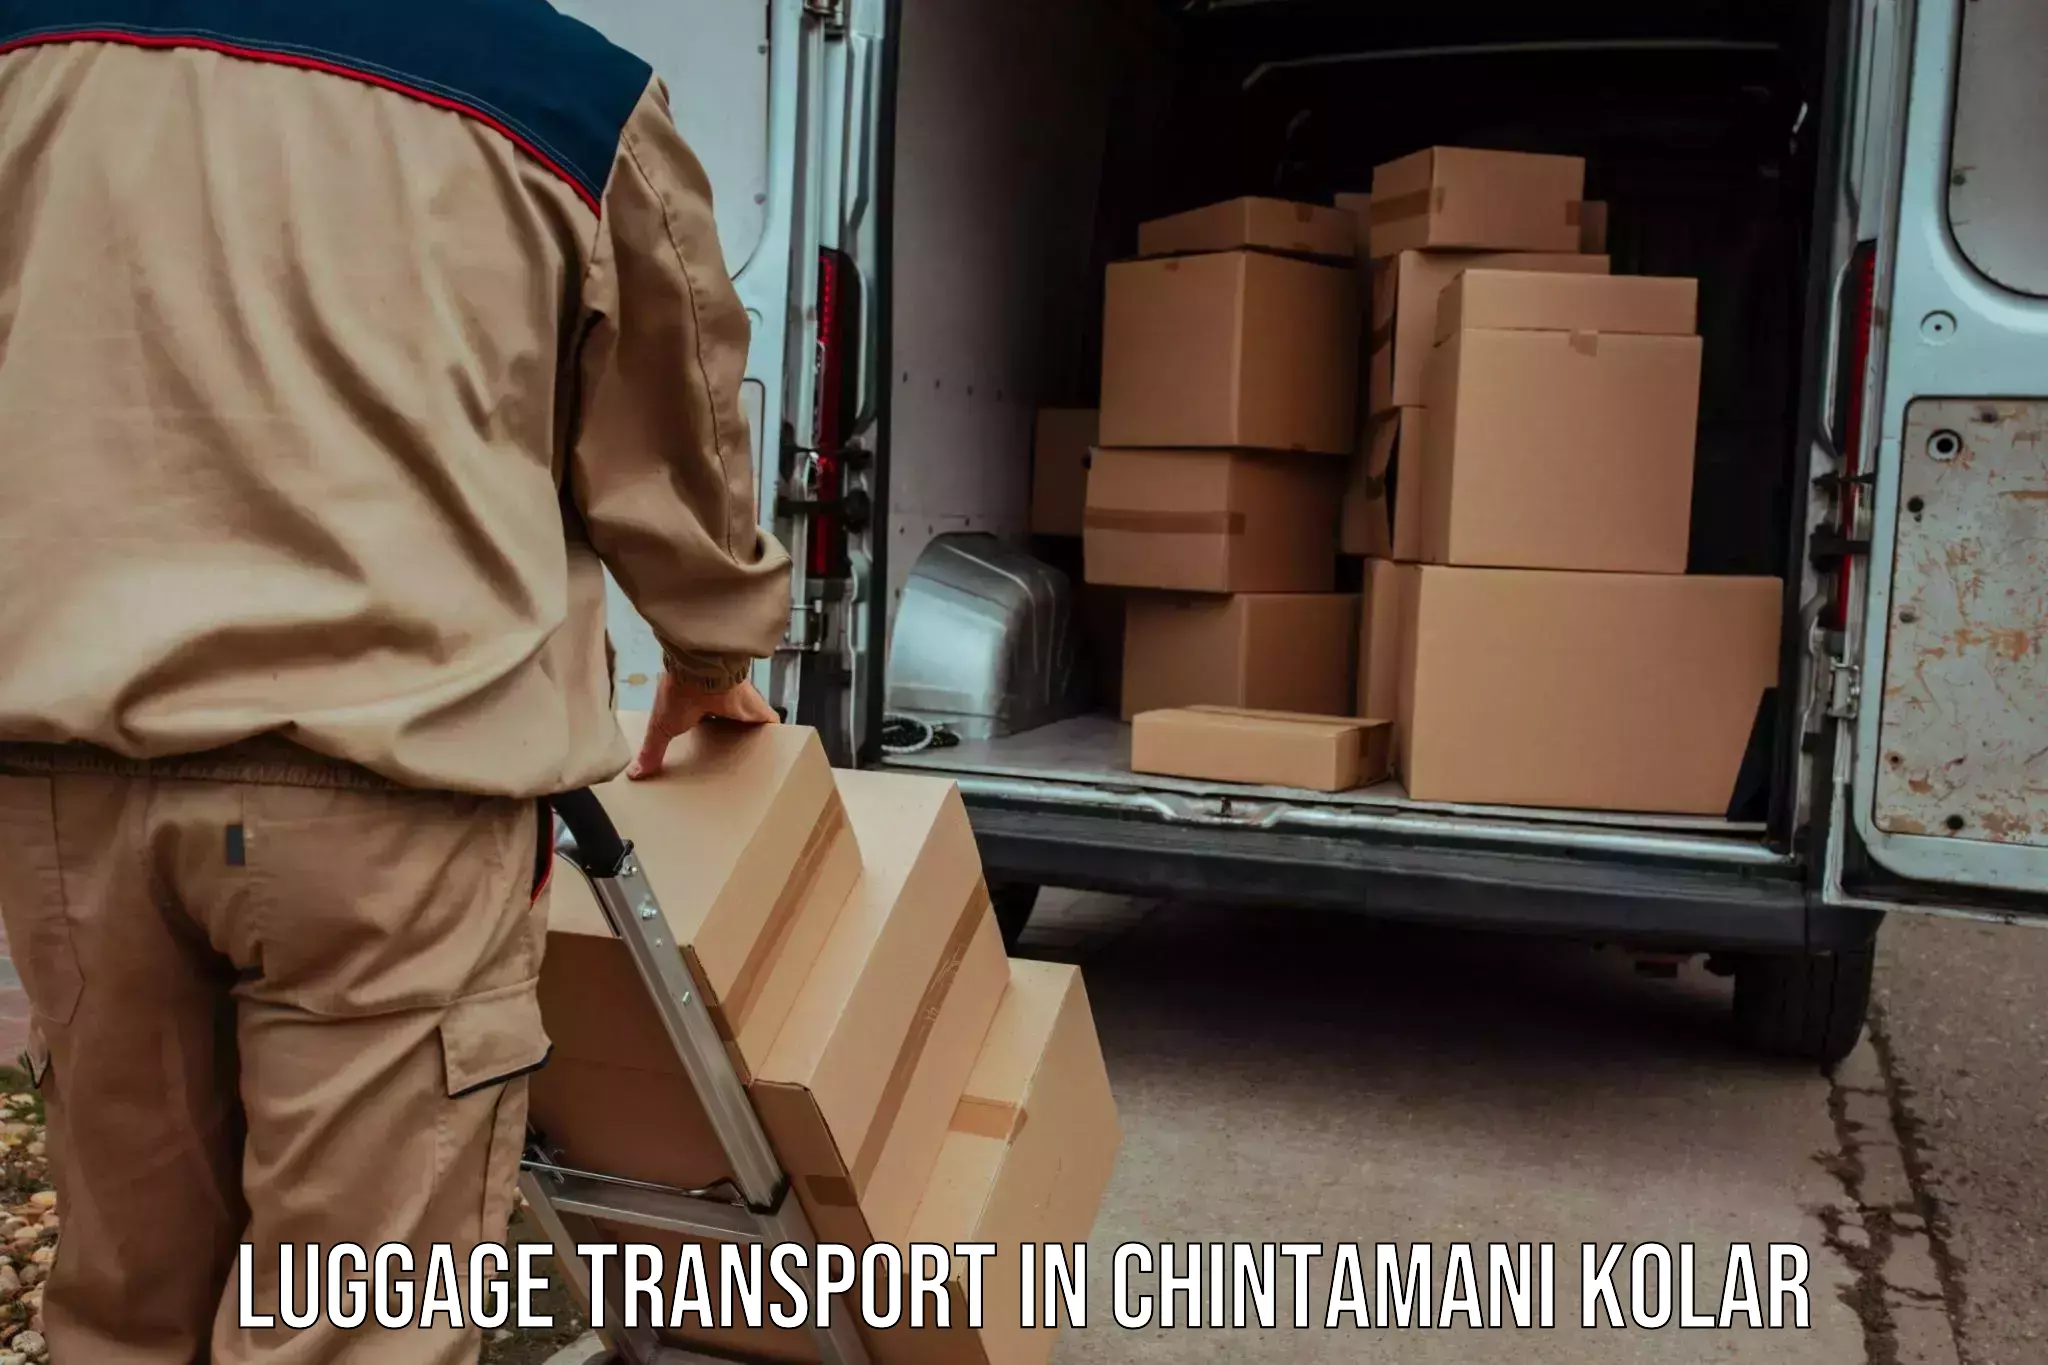 Weekend baggage shipping in Chintamani Kolar